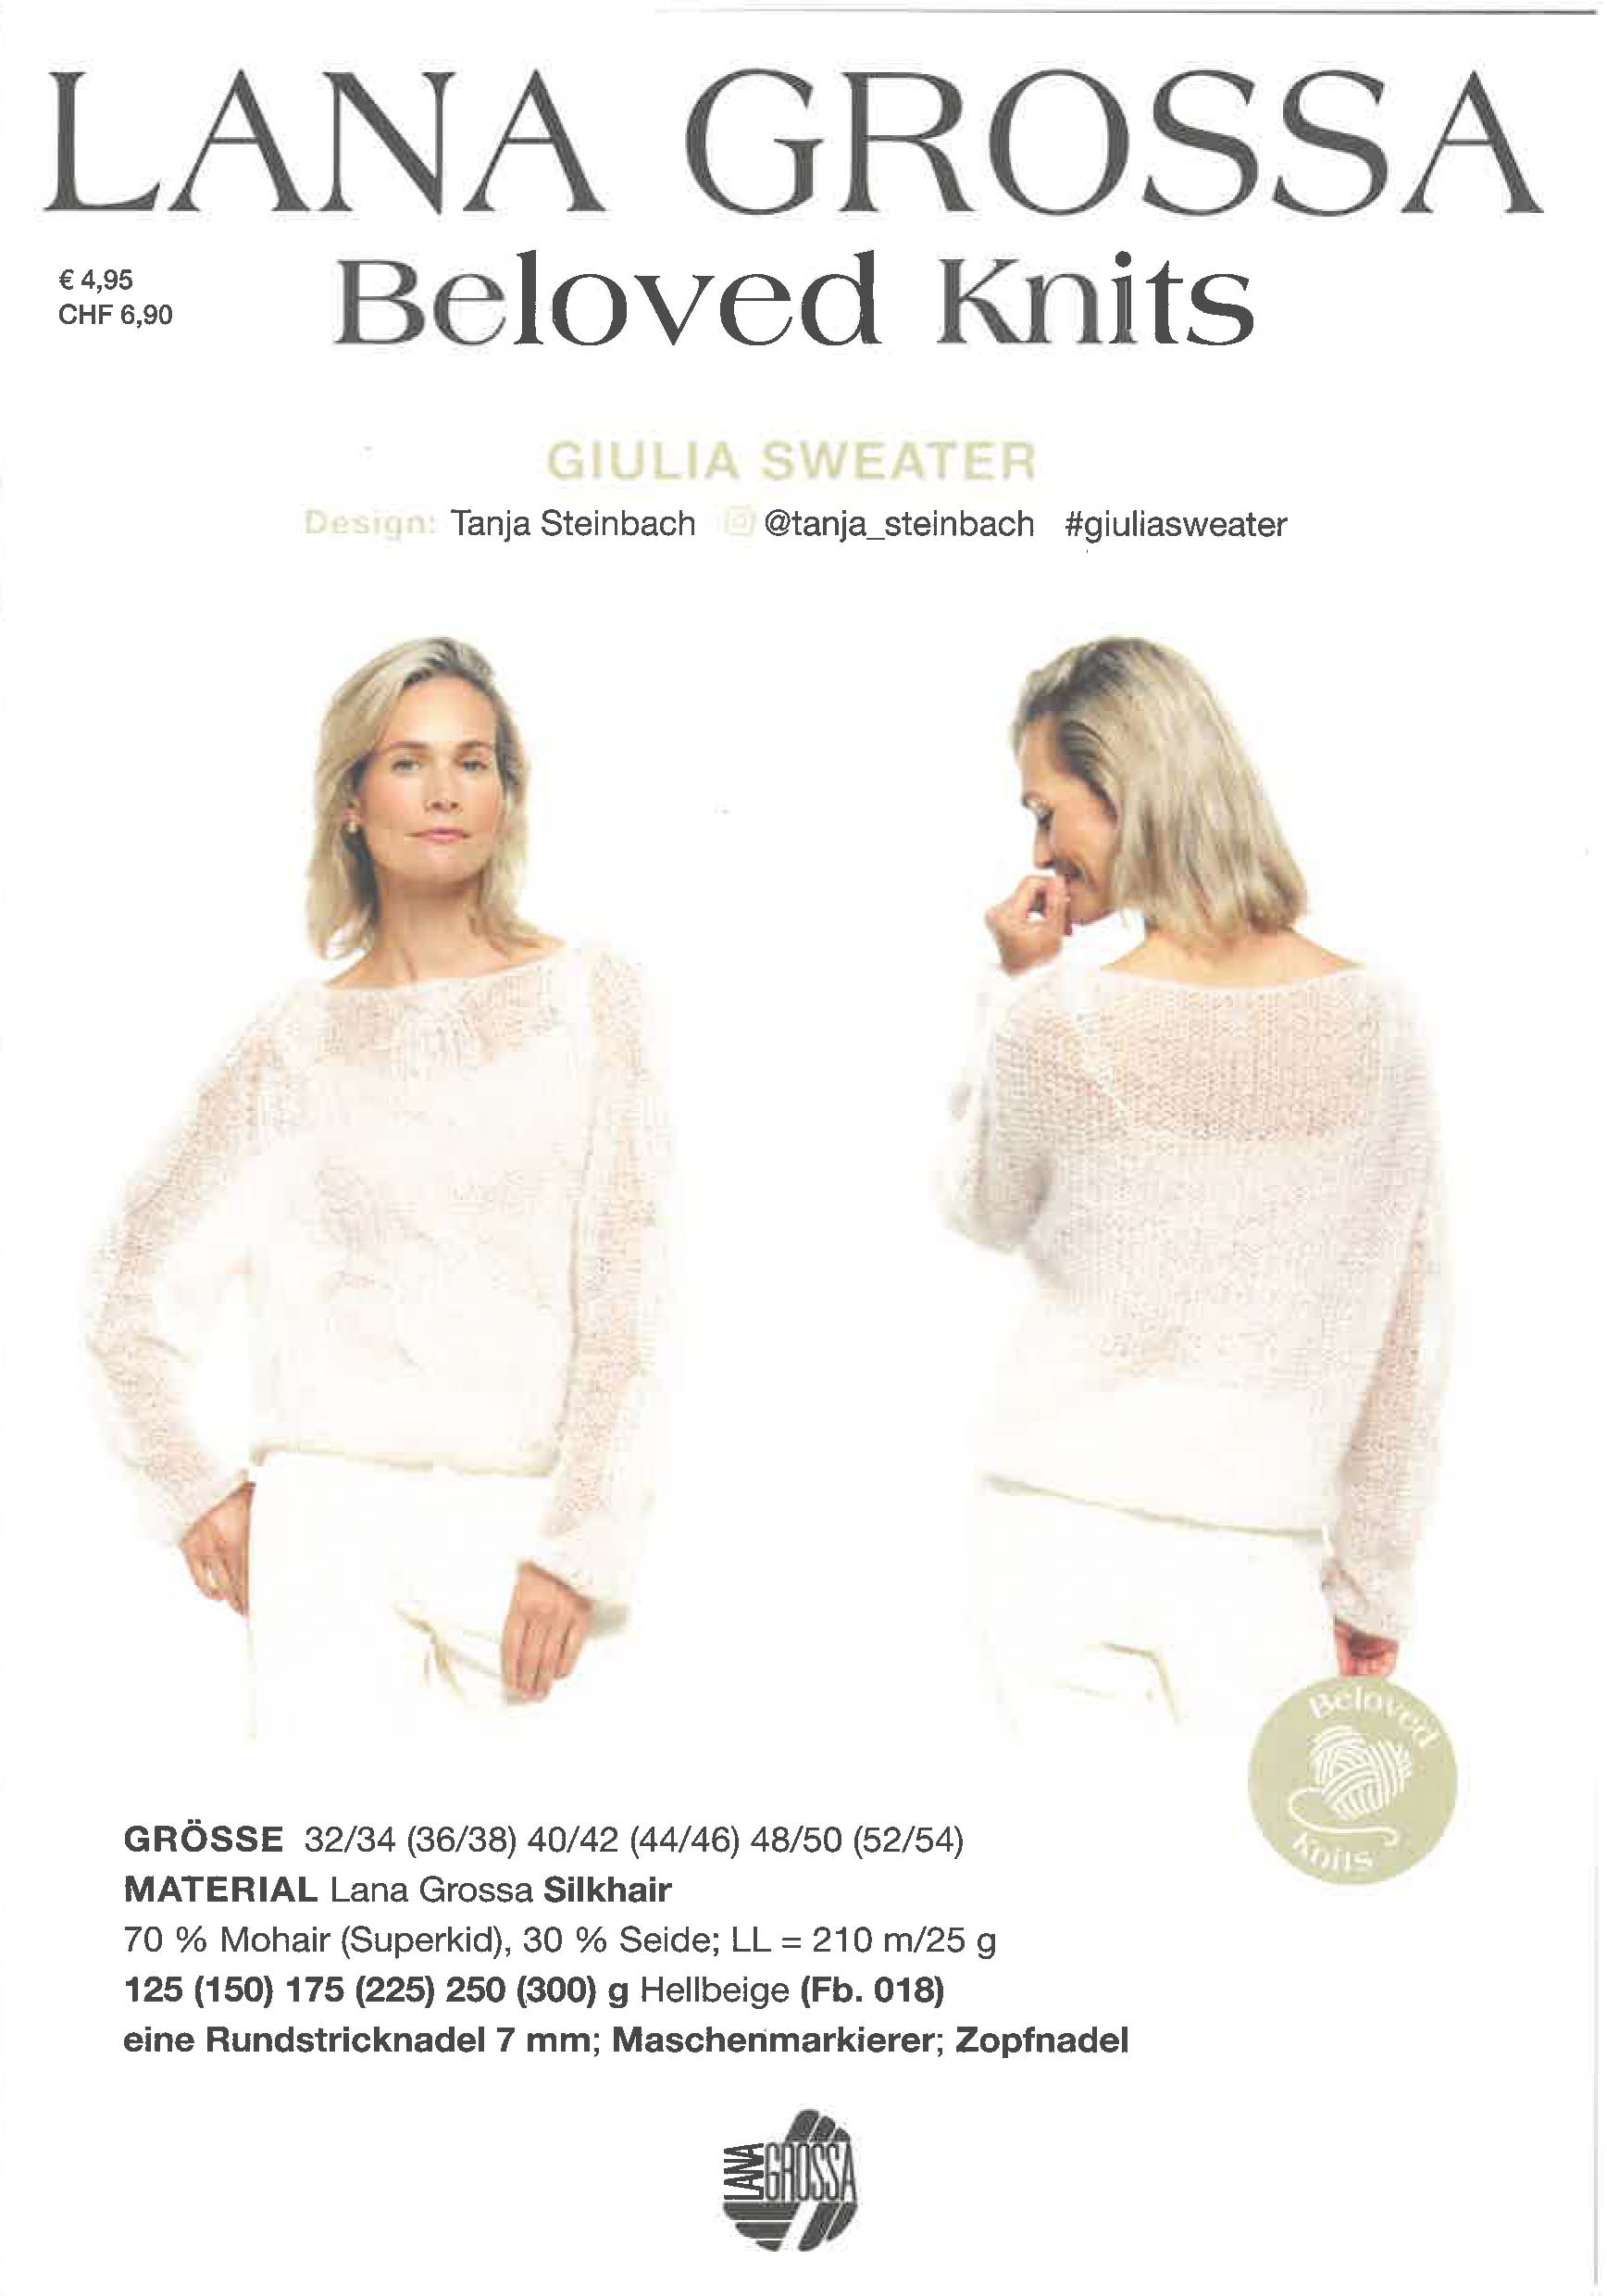 Giulia Sweater